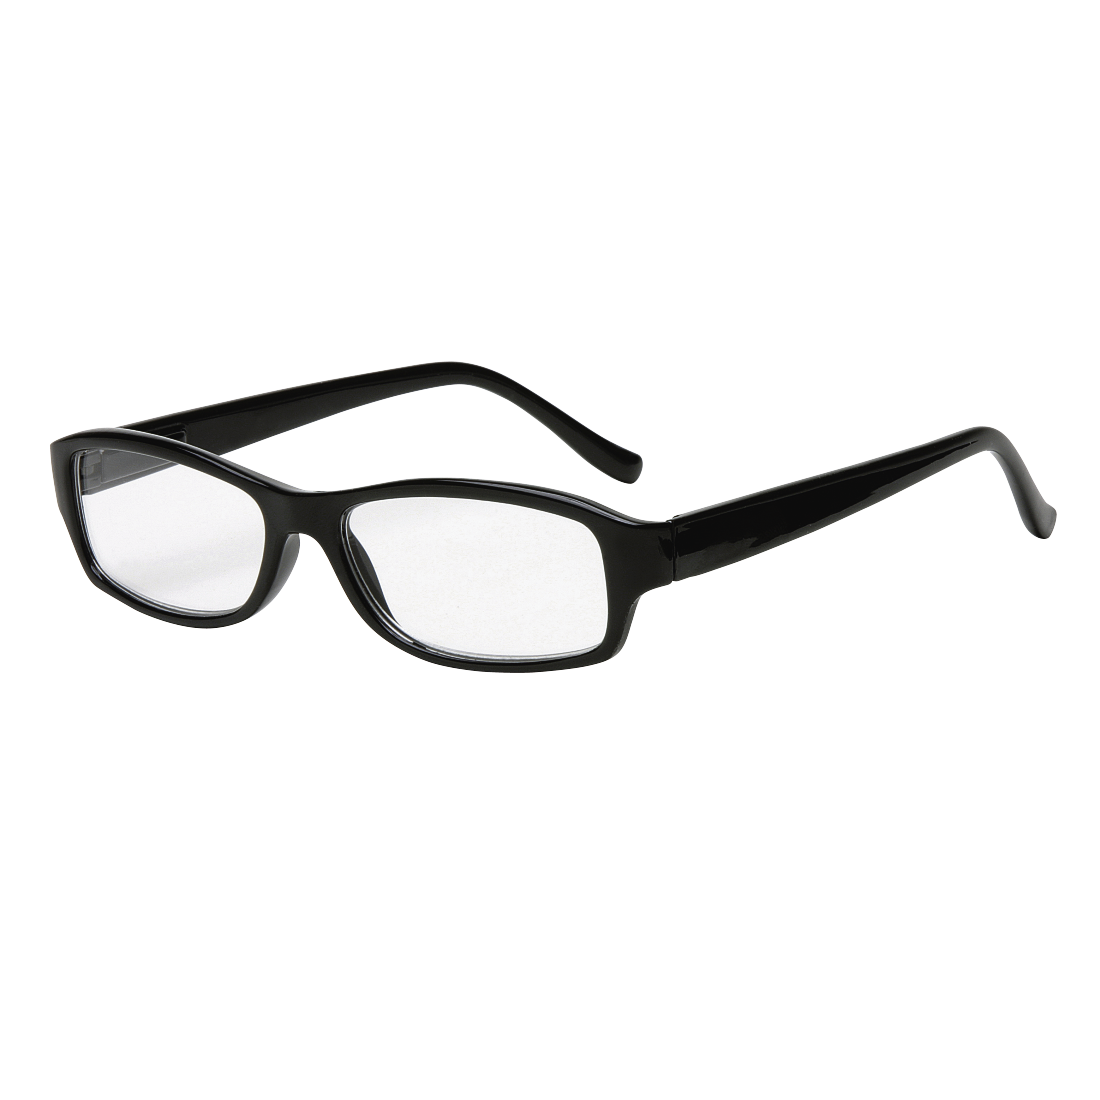 Очки Визини 8051. Готовые корригирующие очки. Очки пластик чёрные. Готовые очки стекло. Готовые очки 3